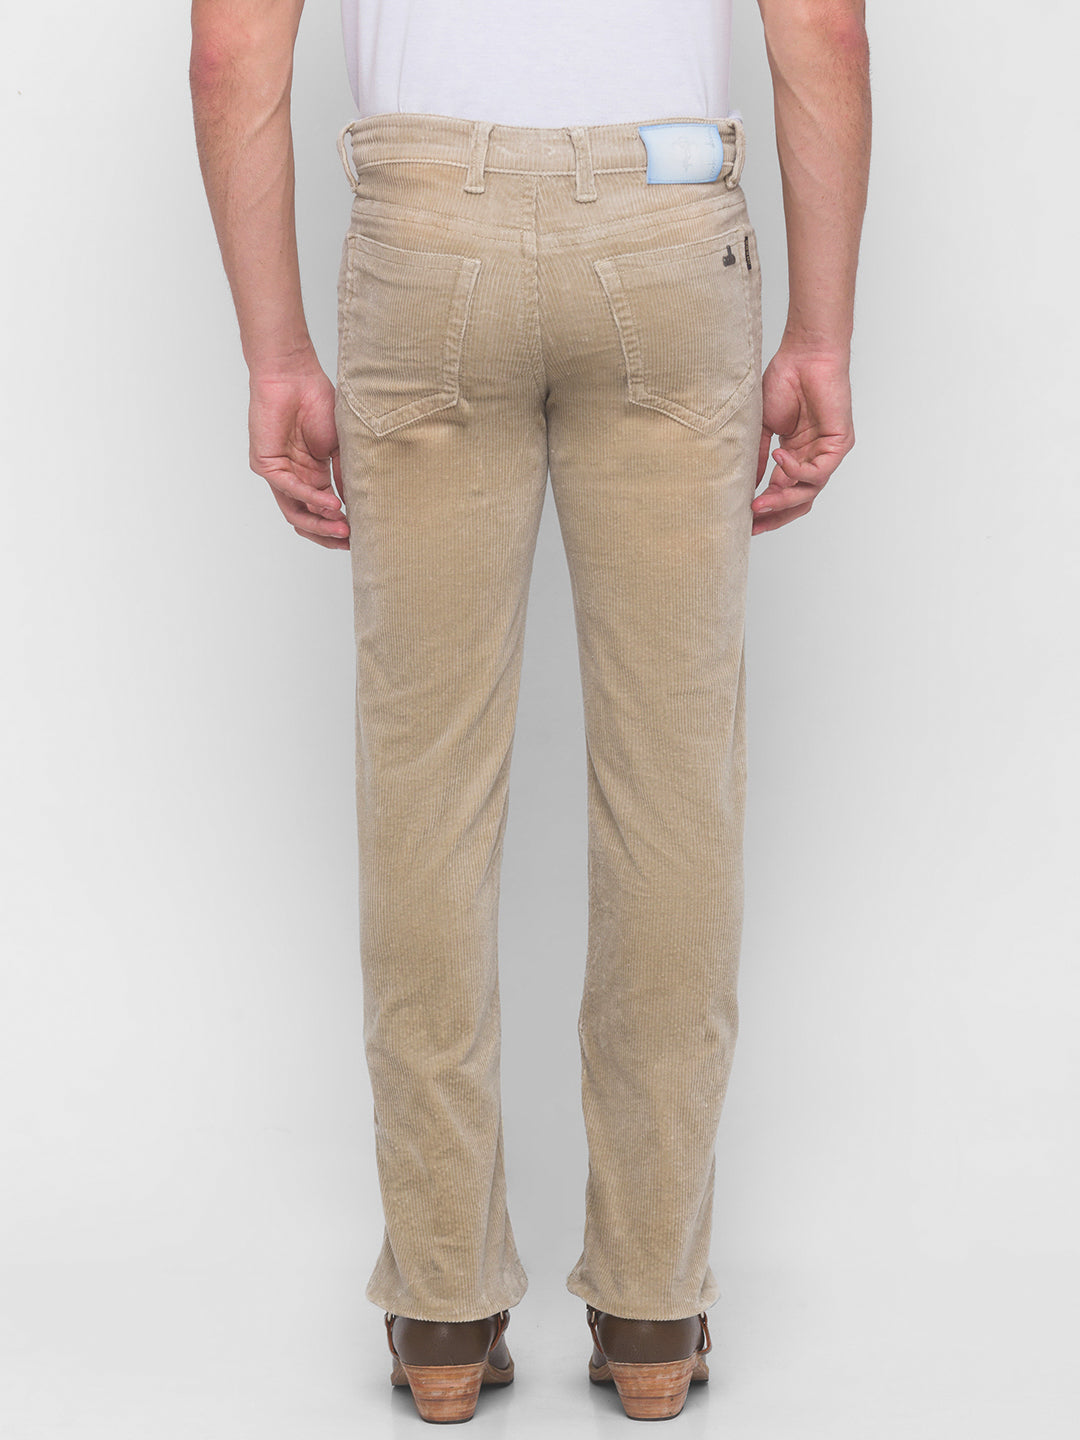 Buy Mens Pants Mens Corduroy Pants Beige Corduroy Pants Chino Pants Retro Pants  Mens Pants Vintage Golf Pants Disco Pants Work Pants XL Online in India -  Etsy